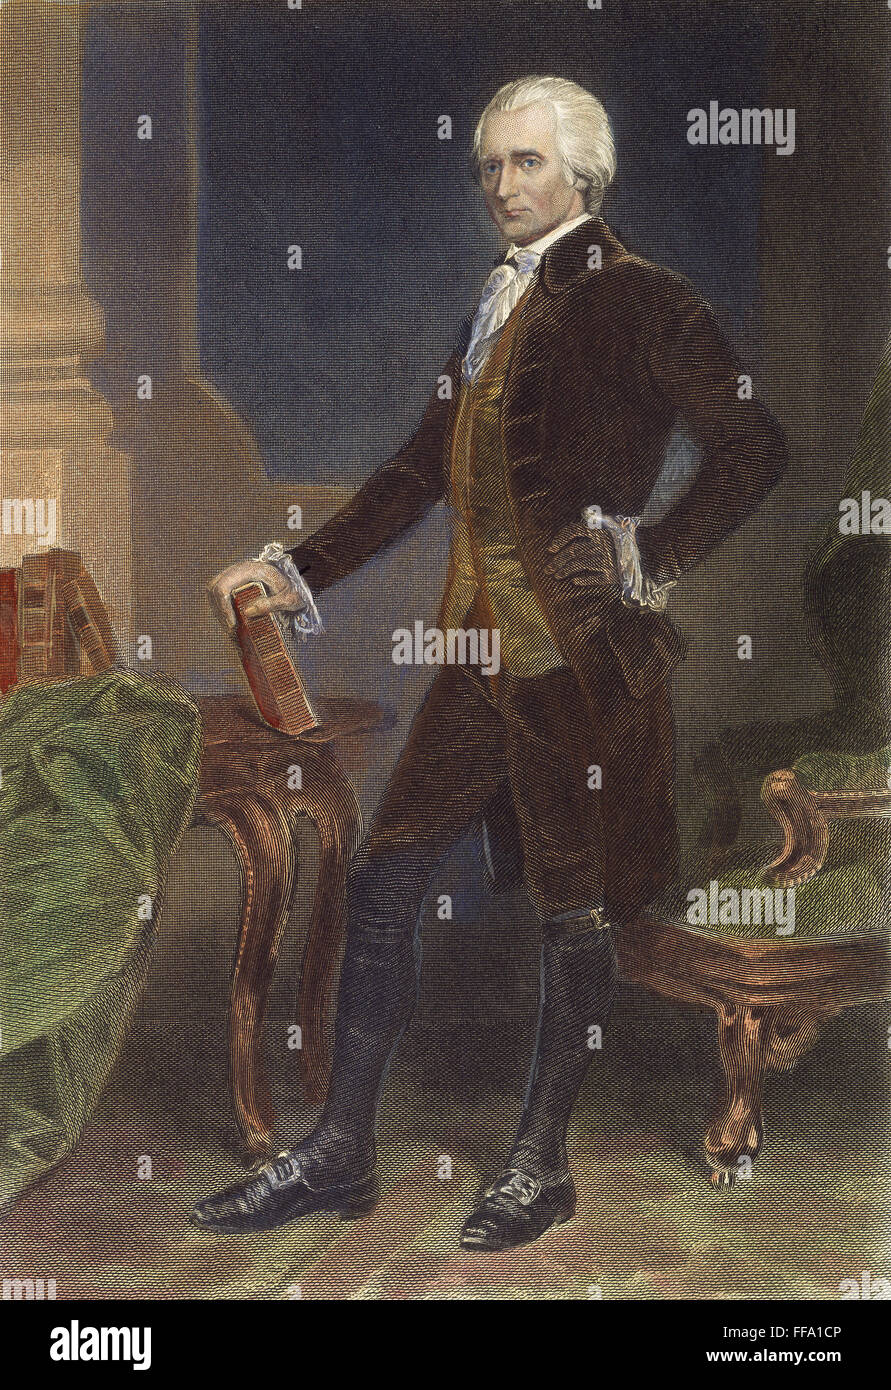 RICHARD HENRY LEE /n(1732-1794). Americano più rivoluzionario. Incisione in acciaio, americano, 1861, dopo un dipinto di Alonzo Chappel. Foto Stock